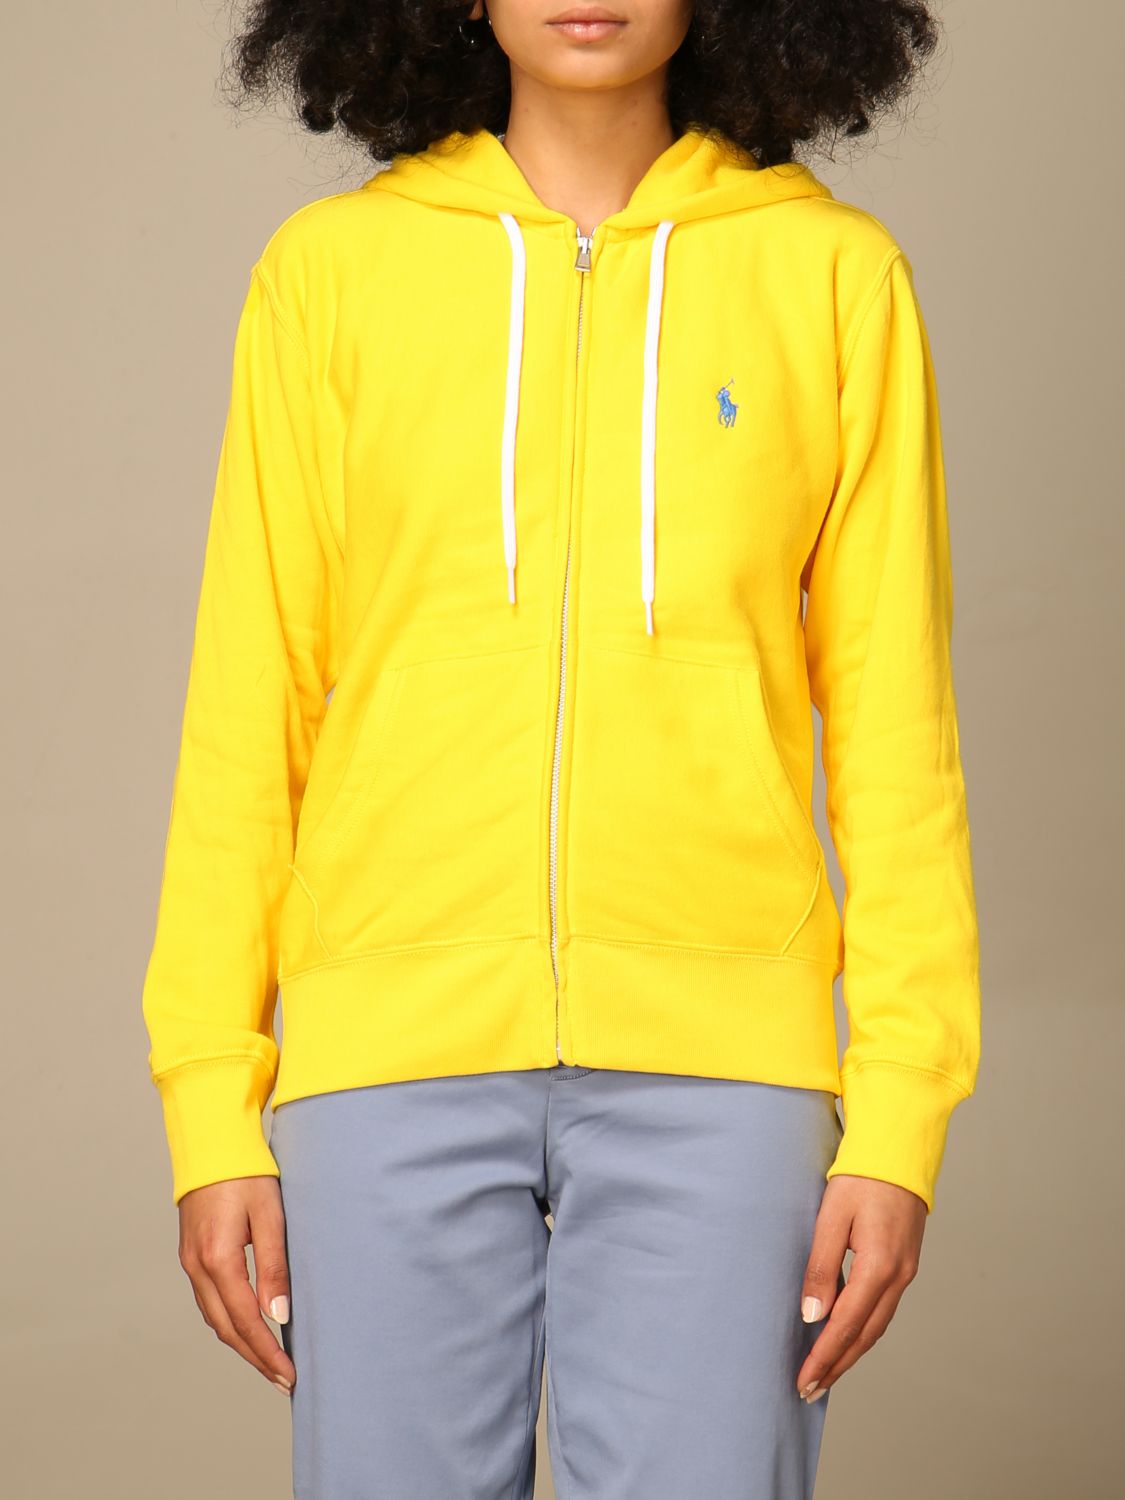 POLO RALPH LAUREN: hoodie with logo - Yellow | Polo Ralph Lauren sweatshirt  211780303 online on 